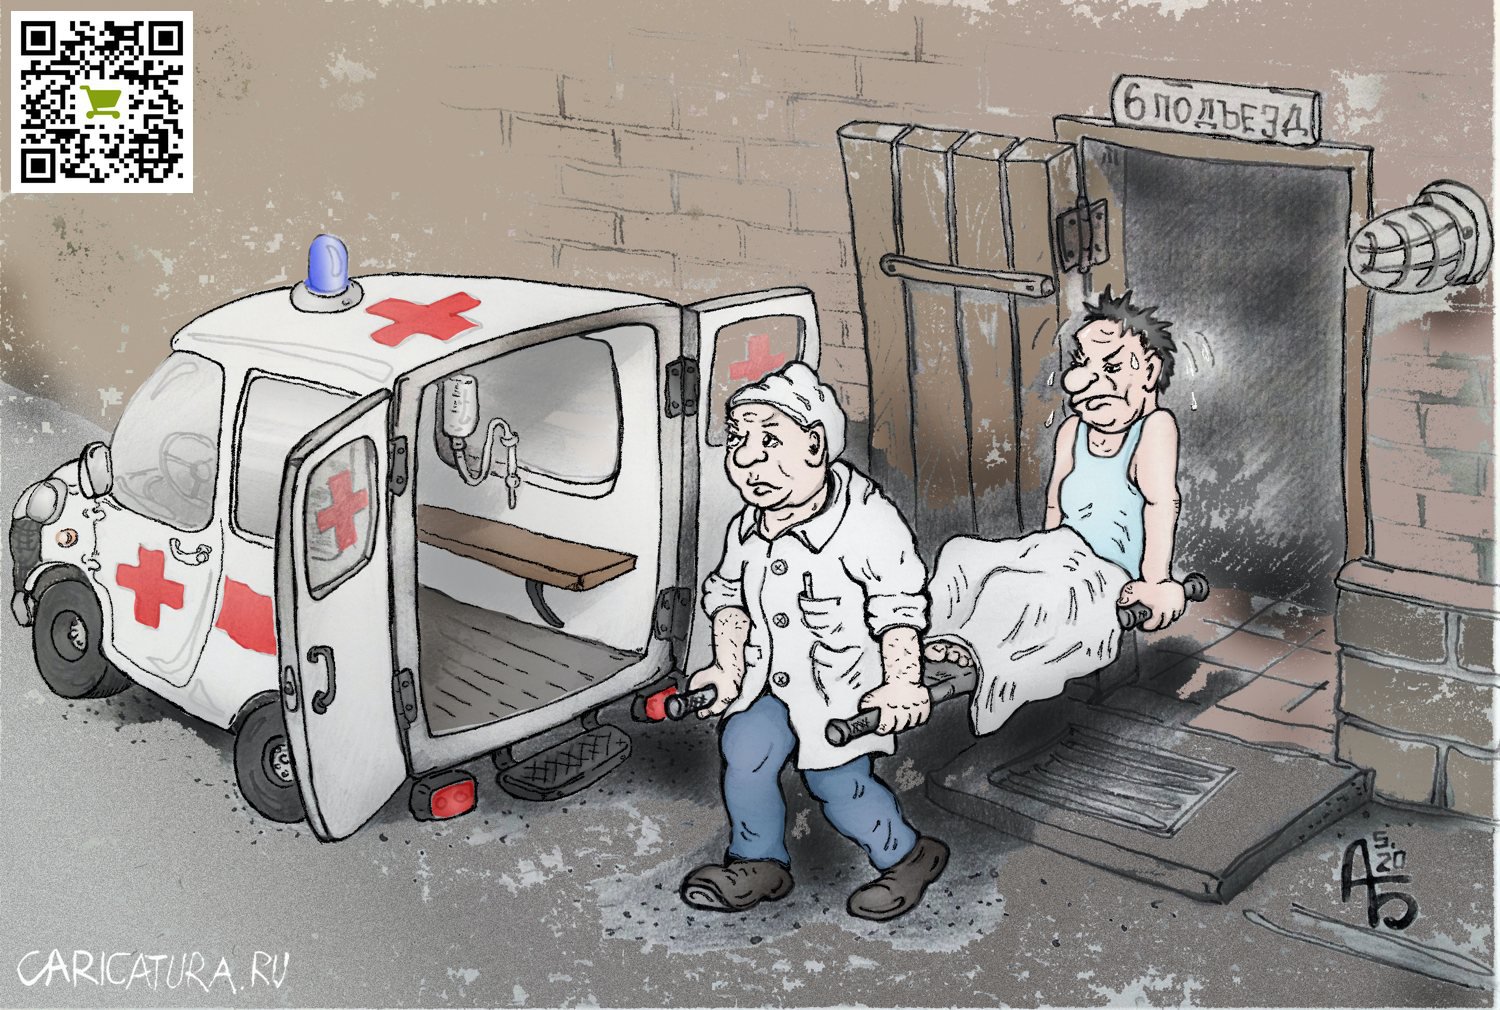 Карикатура "Оптимизация медицины", Александр Богданов